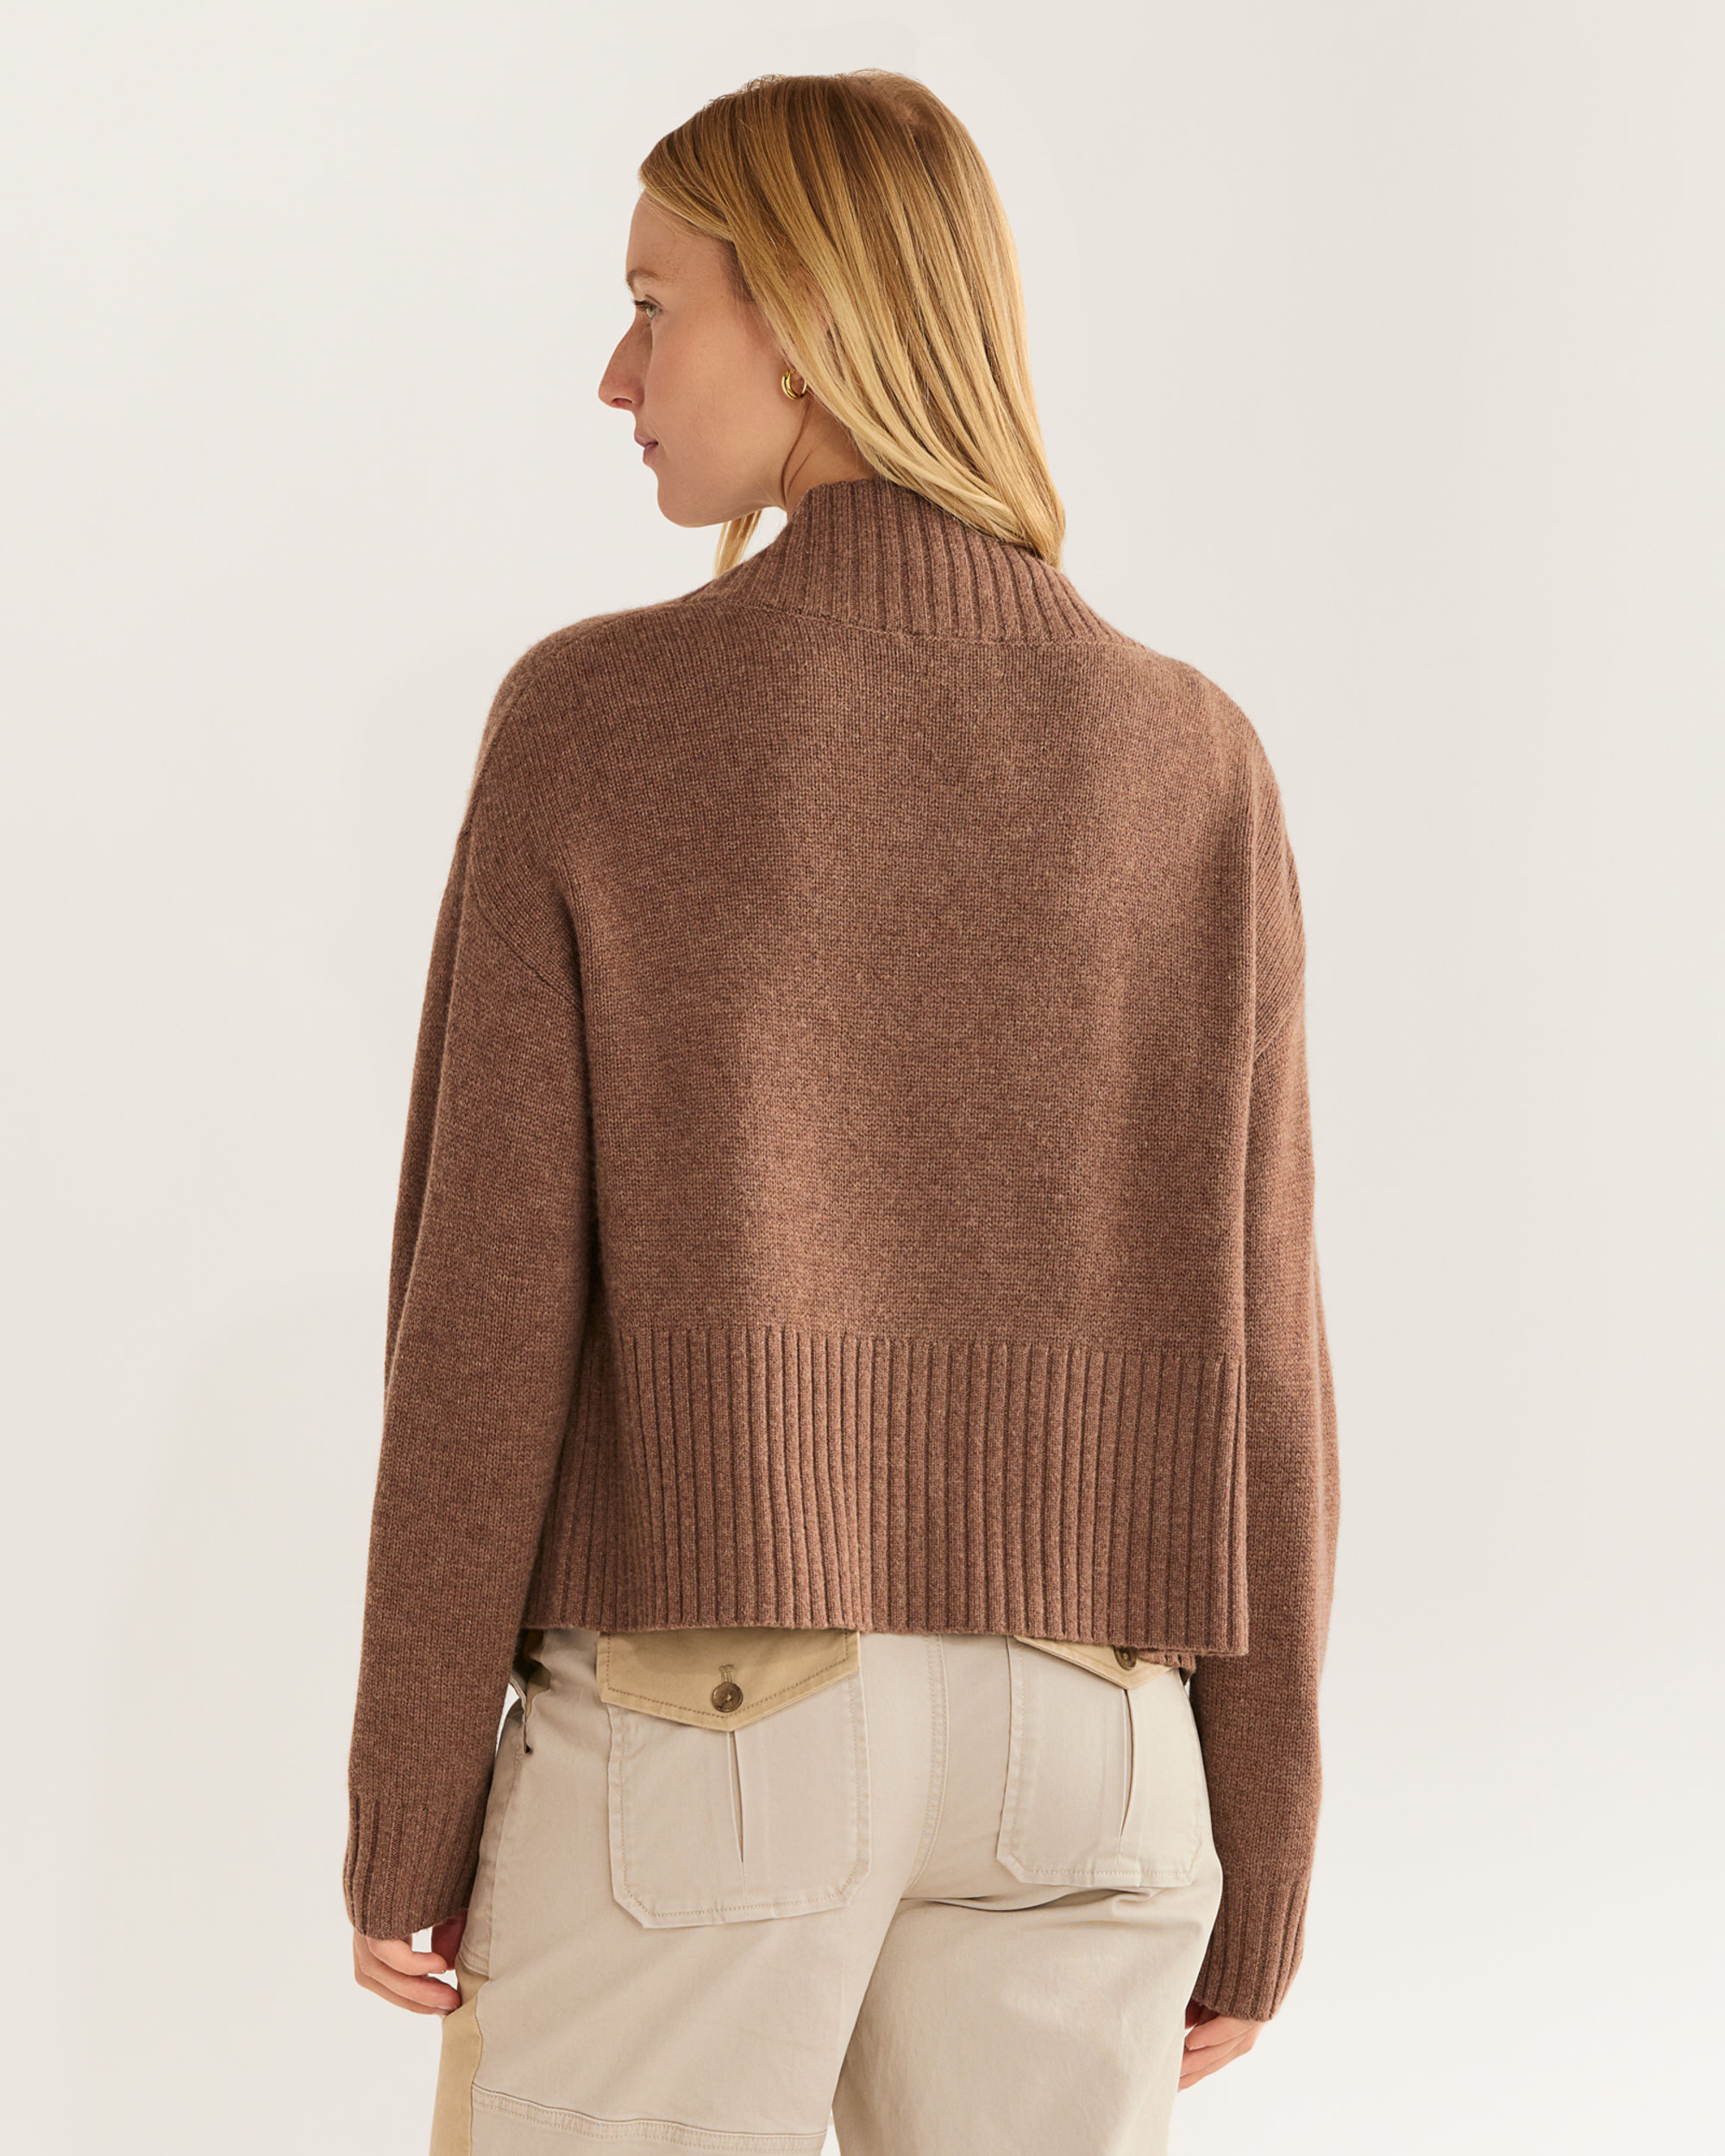 Women's Knitwear: Cashmere, Sweaters, Cardigans